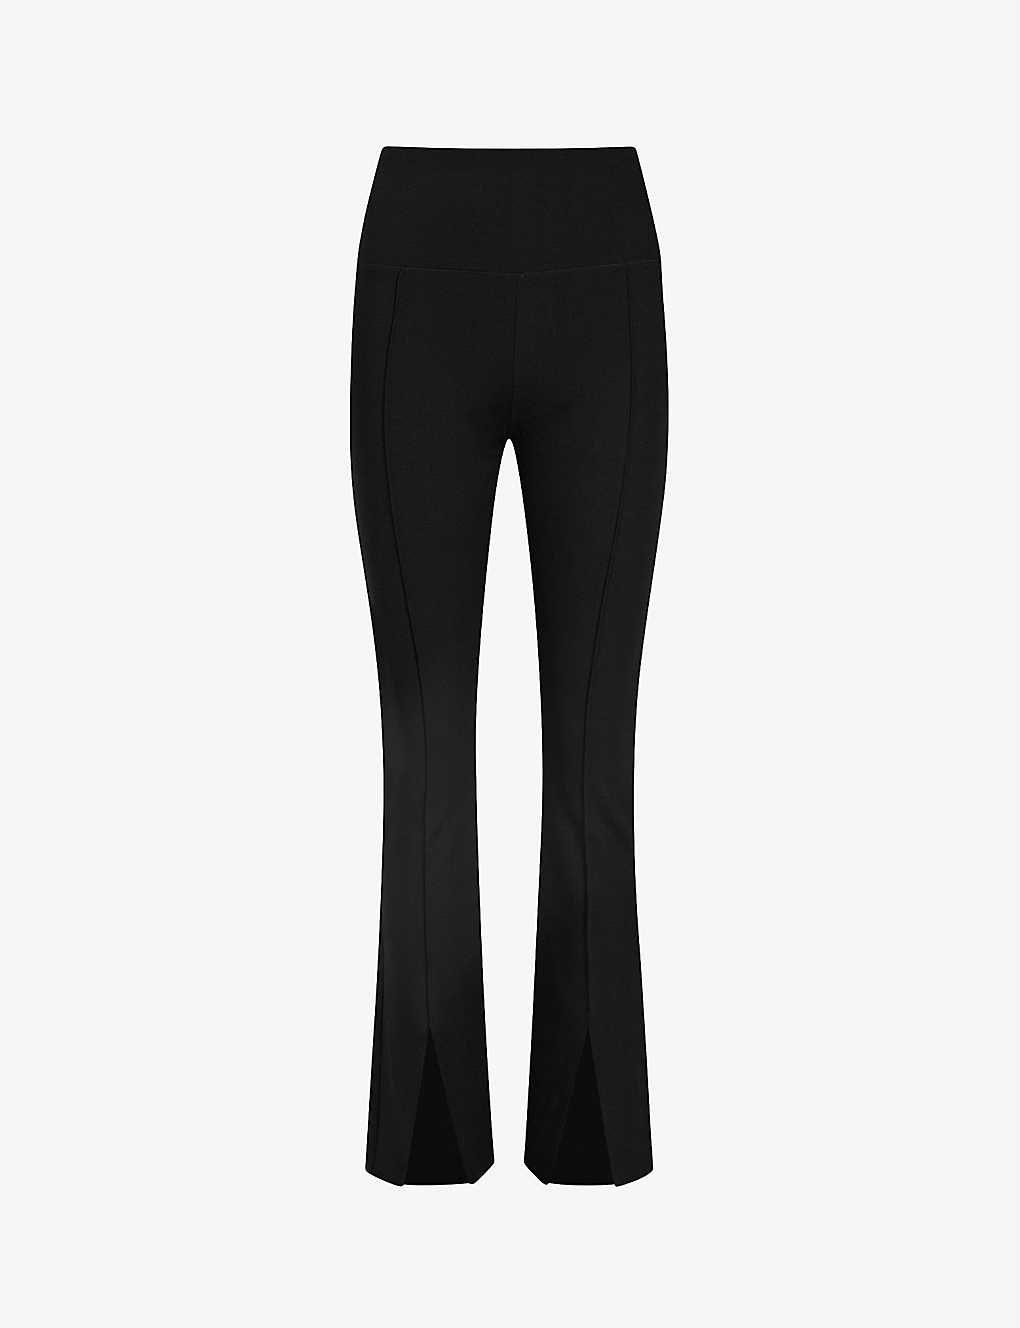 ALLSAINTS - Tamie ankle-split stretch-woven trousers | Selfridges.com